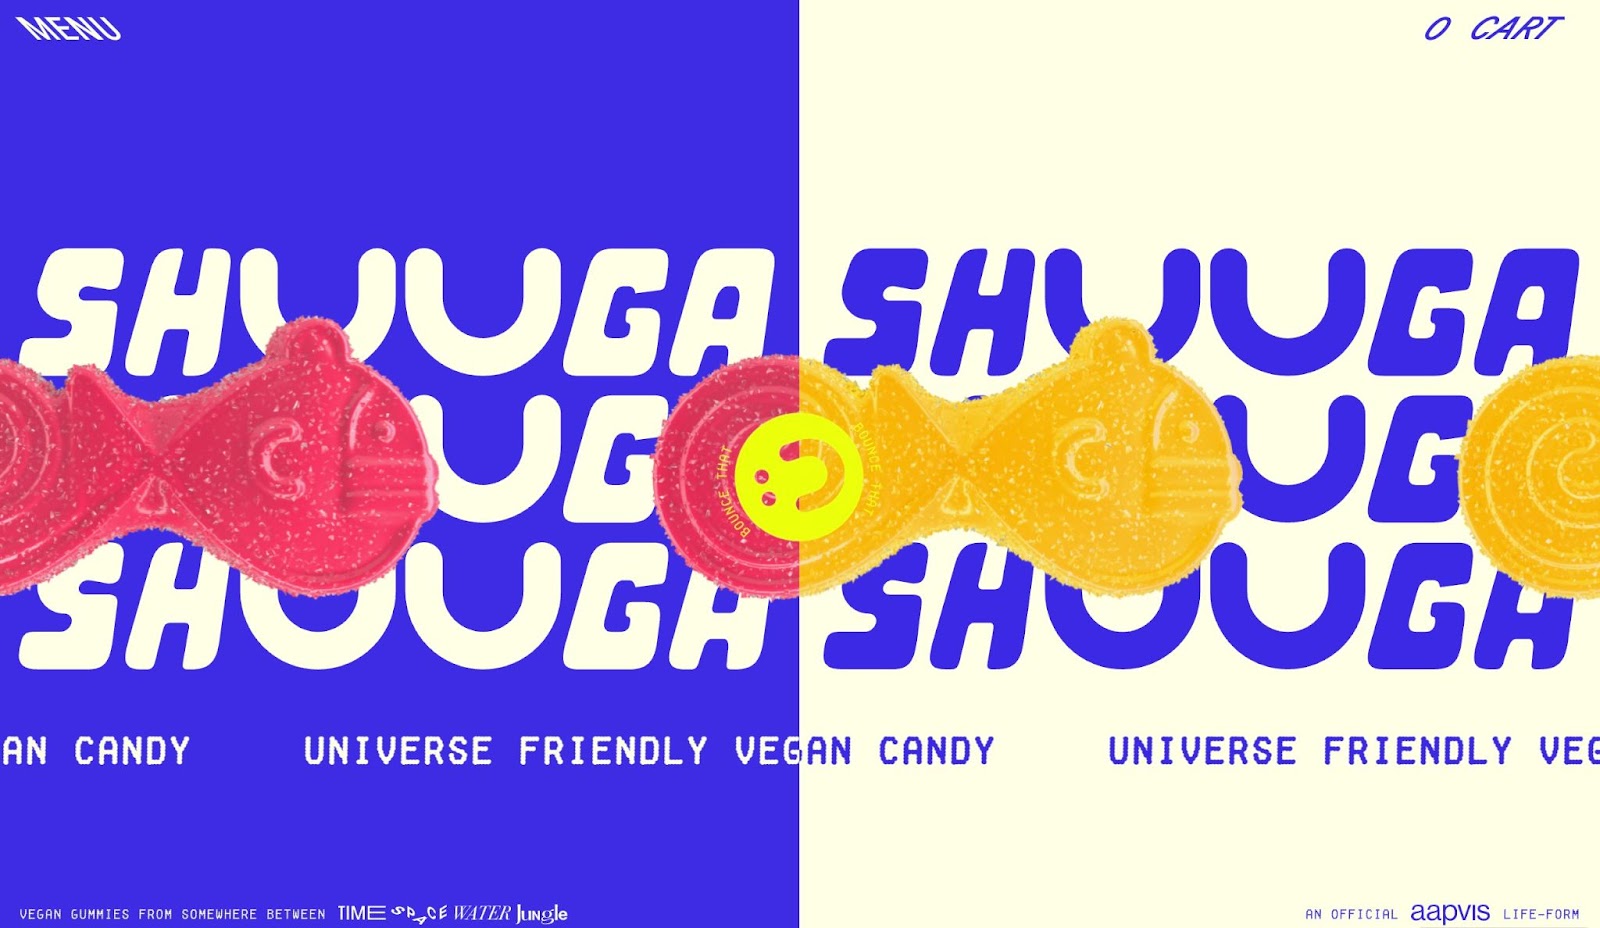 Shuga 的站点标题，垂直分成两半。左侧为蓝色，奶油色文字为 SHUGA。右侧与奶油色背景和蓝色文本相同。背景上方是他们纯素鱼形糖果的粉色和橙色效果图。